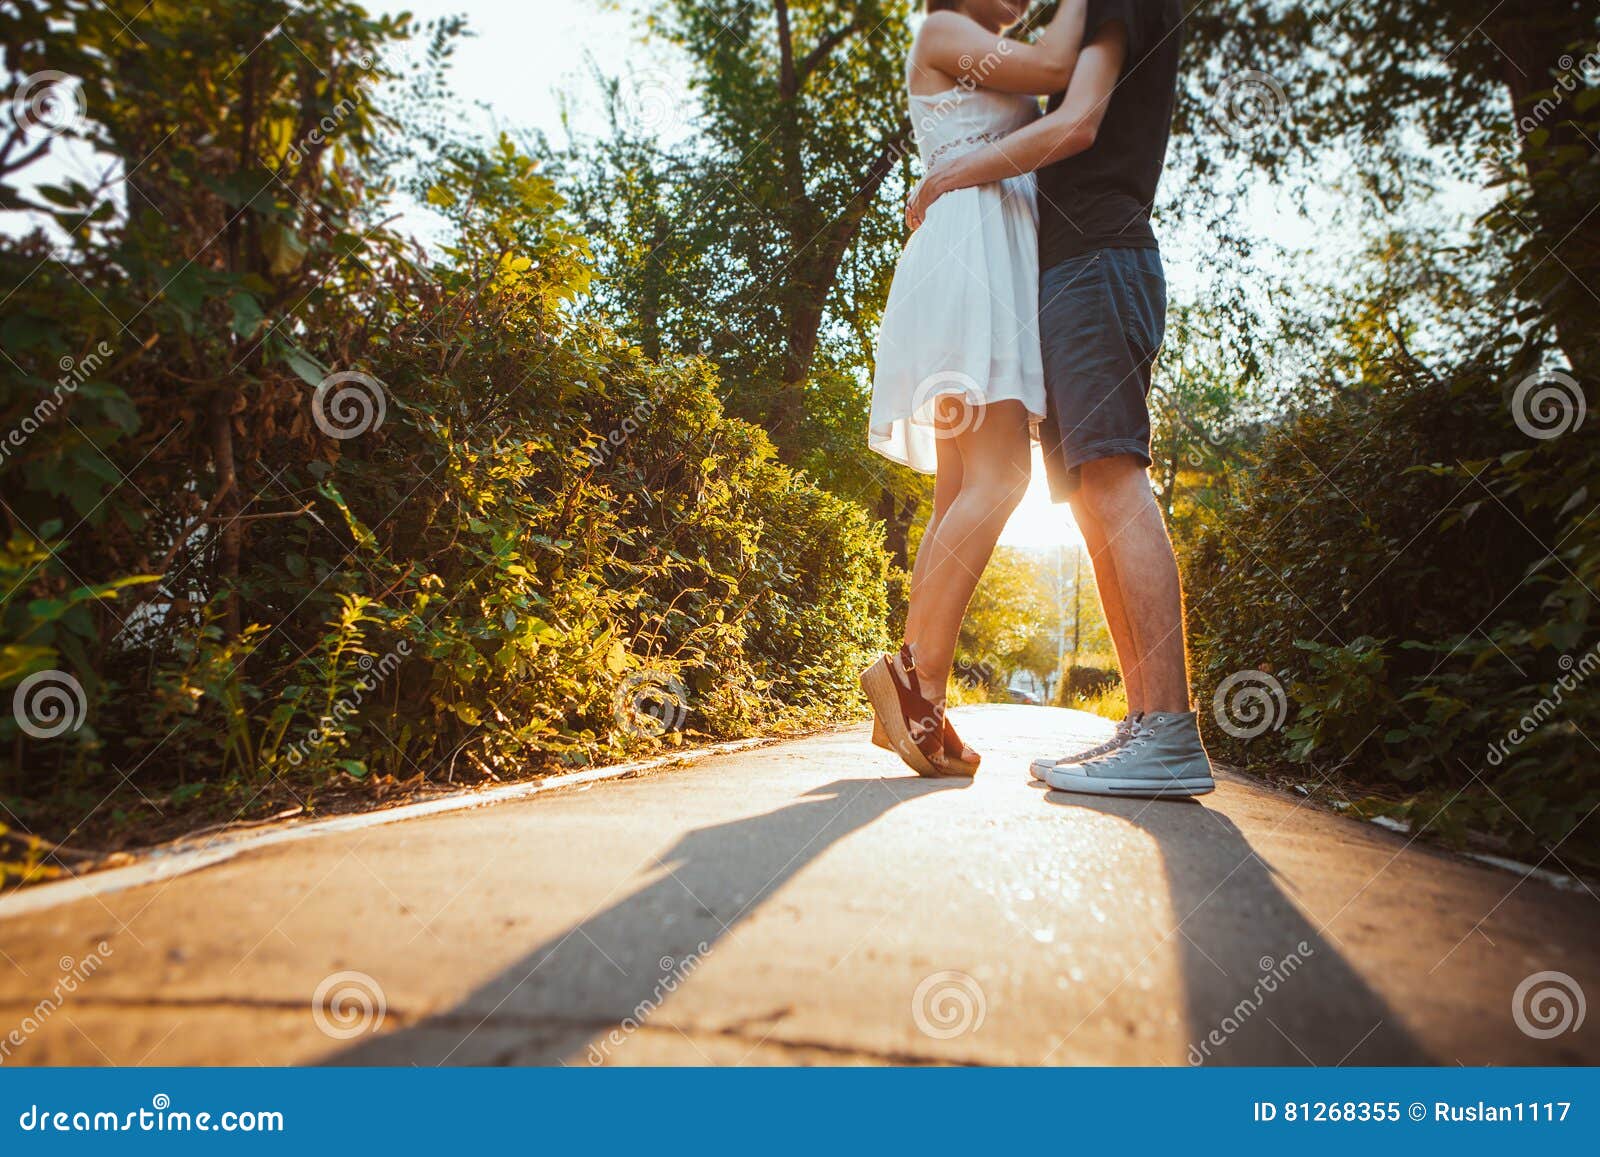 Девушка обнимает ноги. Девушка обнимает мужчину в парке летом. Девушка обнимает ноги девушки картинки. Парень с девушкой обнимаются спины идут по городу босиком. Girl hugging guy with Legs.